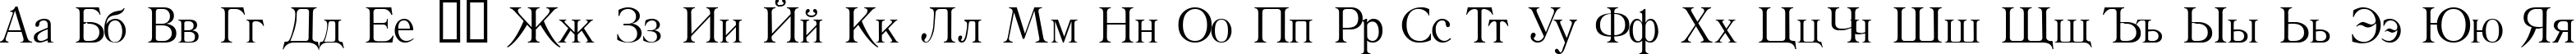 Пример написания русского алфавита шрифтом Literature